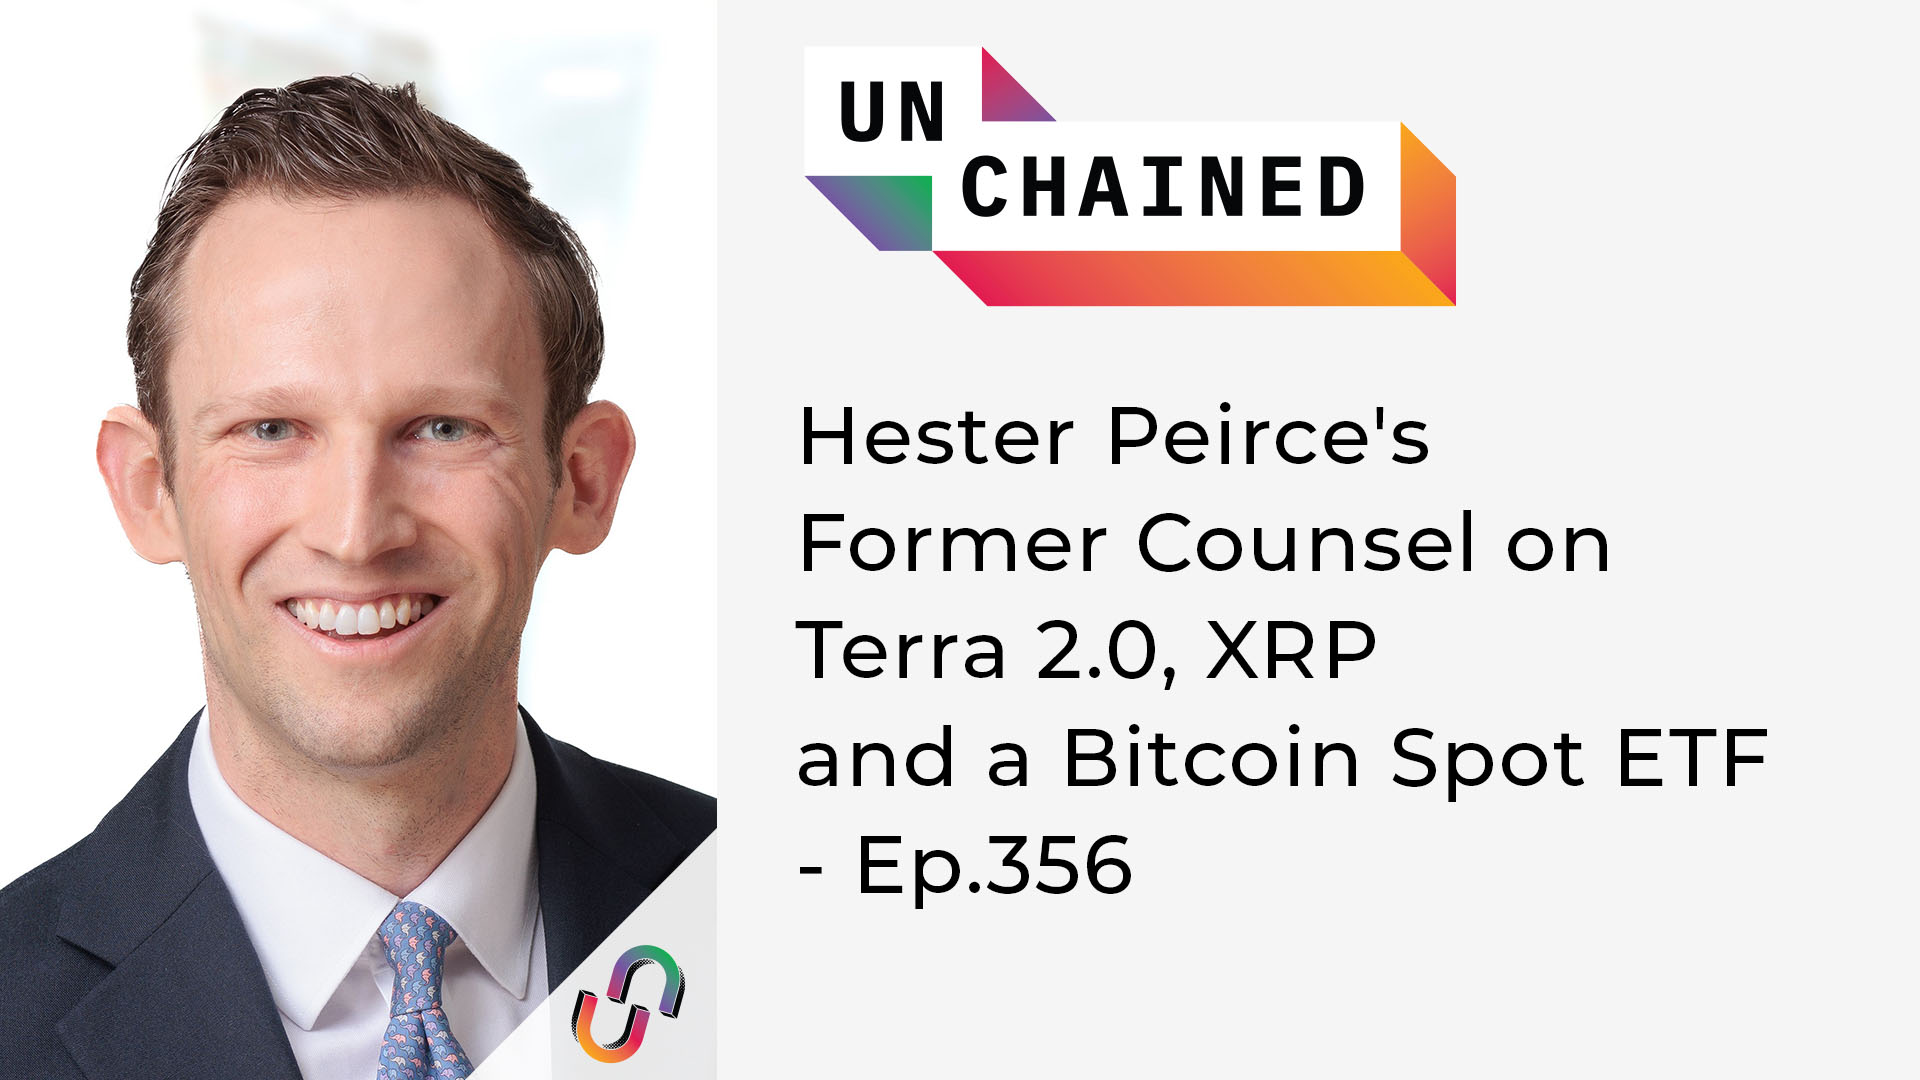 Unchained - Ep.356 - L'ancien avocat de Hester Peirce sur Terra 2.0, XRP et un ETF Bitcoin Spot